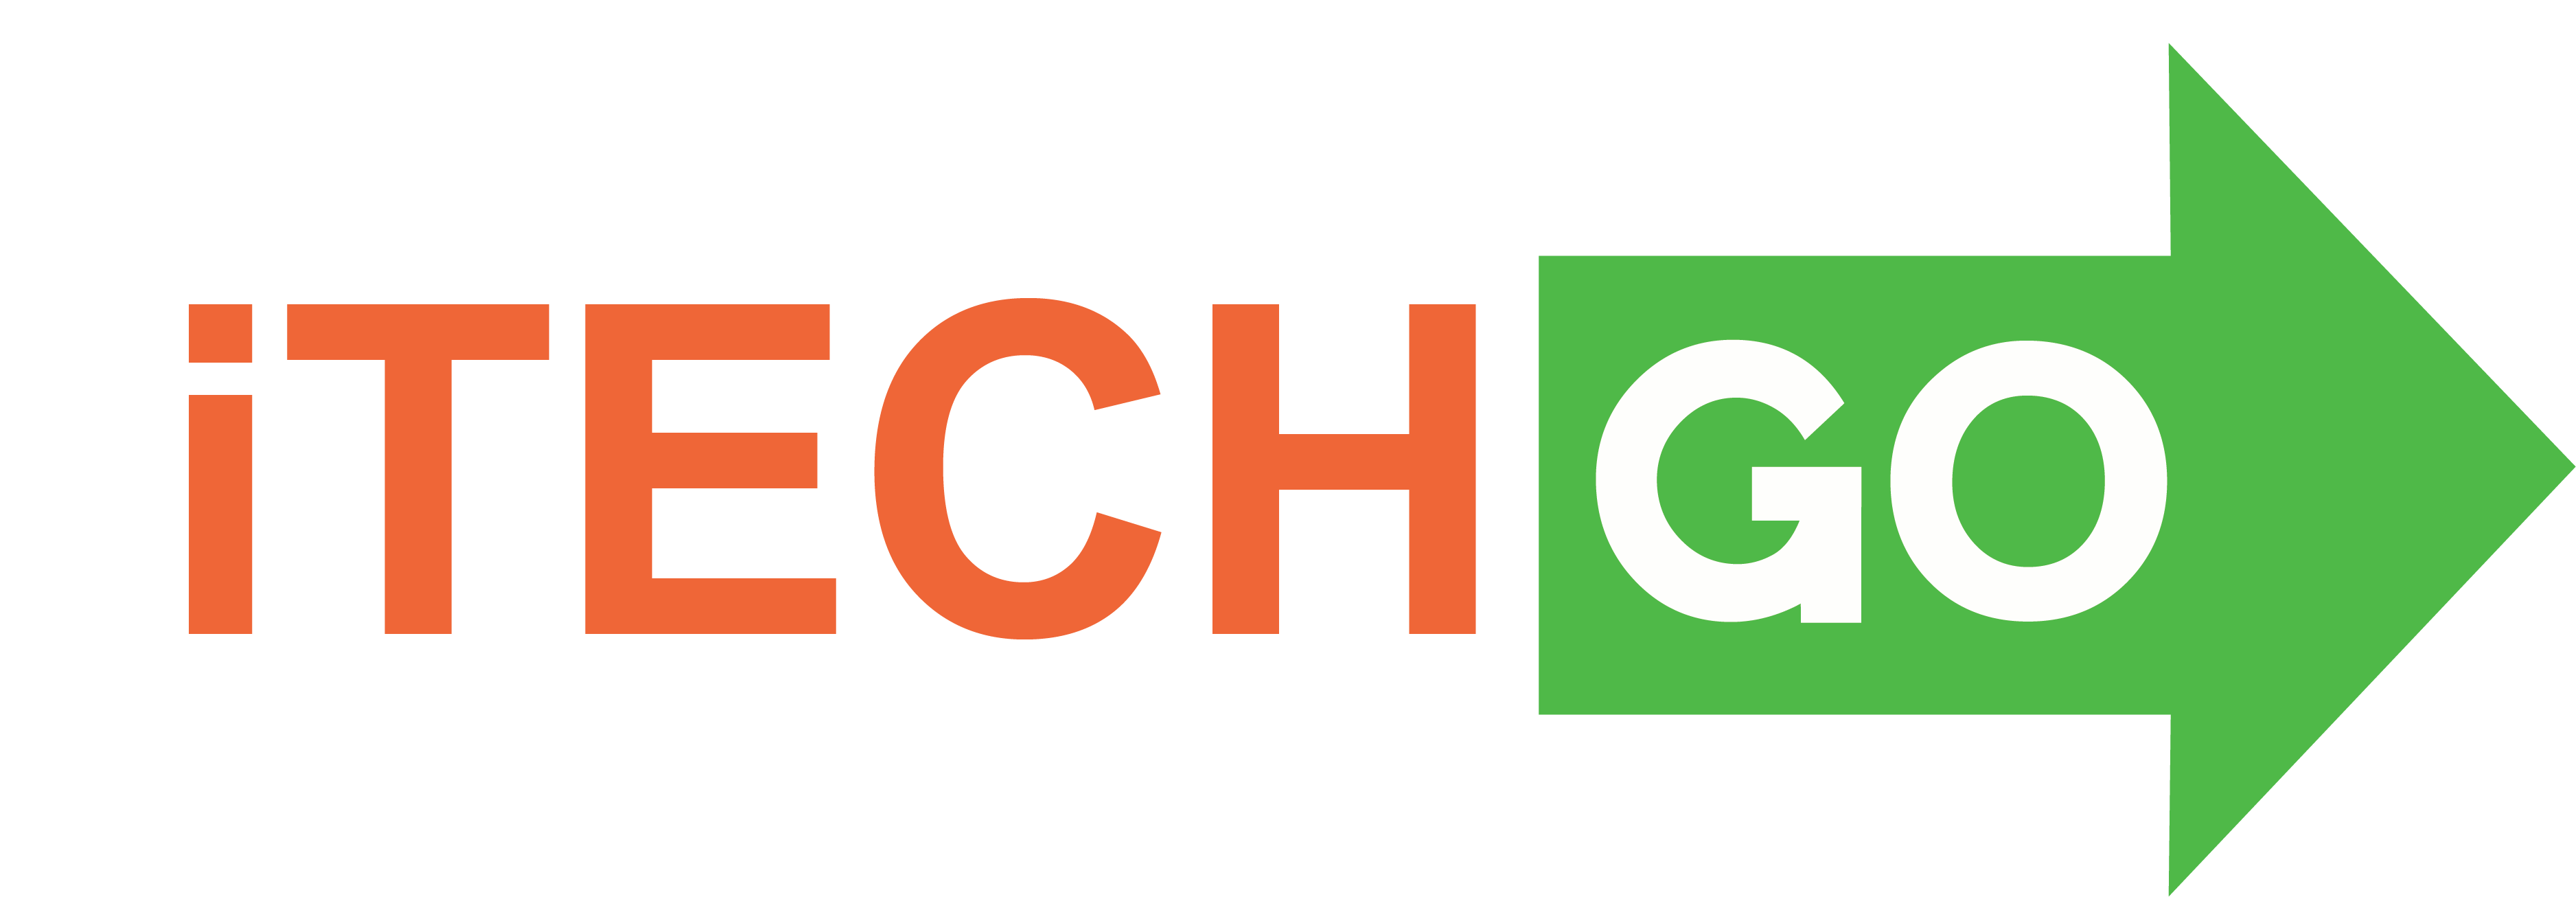 itech go logo
